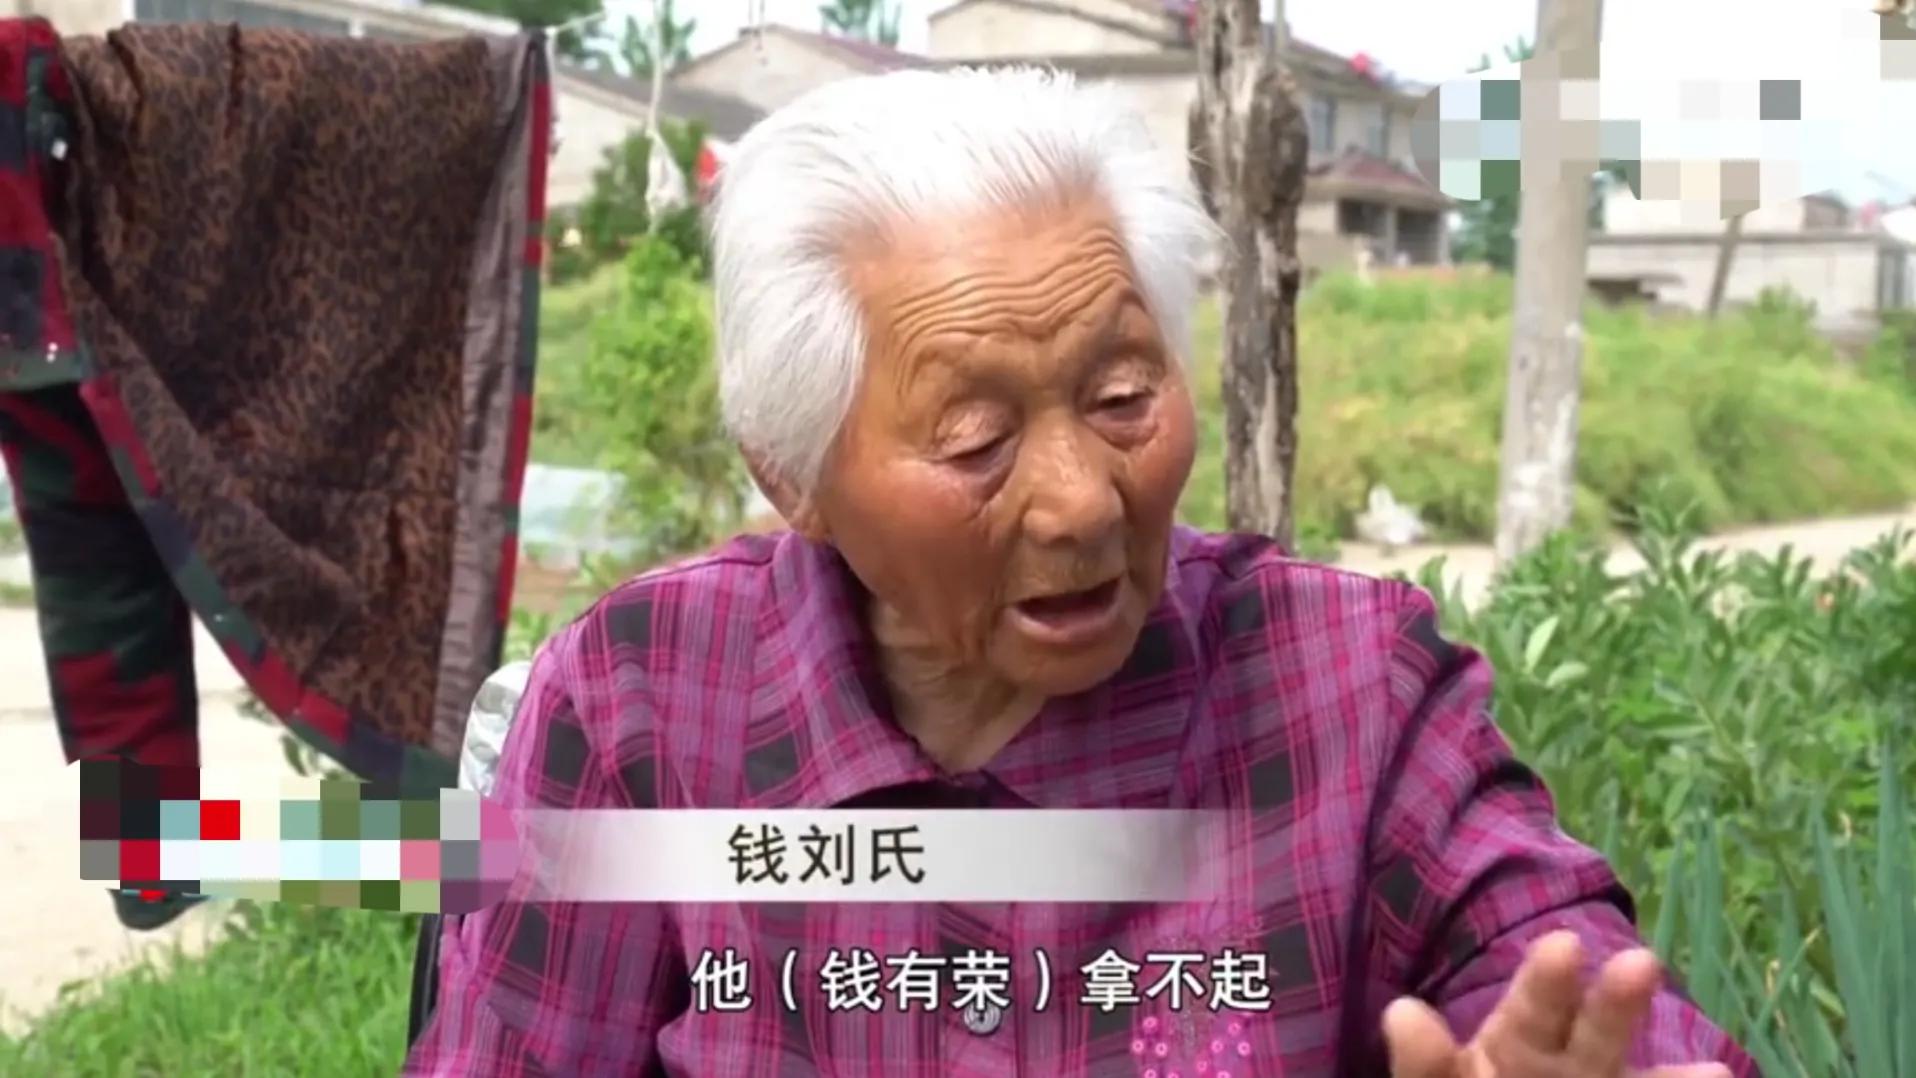 93岁老太向三孙子索要每月370元赡养费,孙子们坚决不给